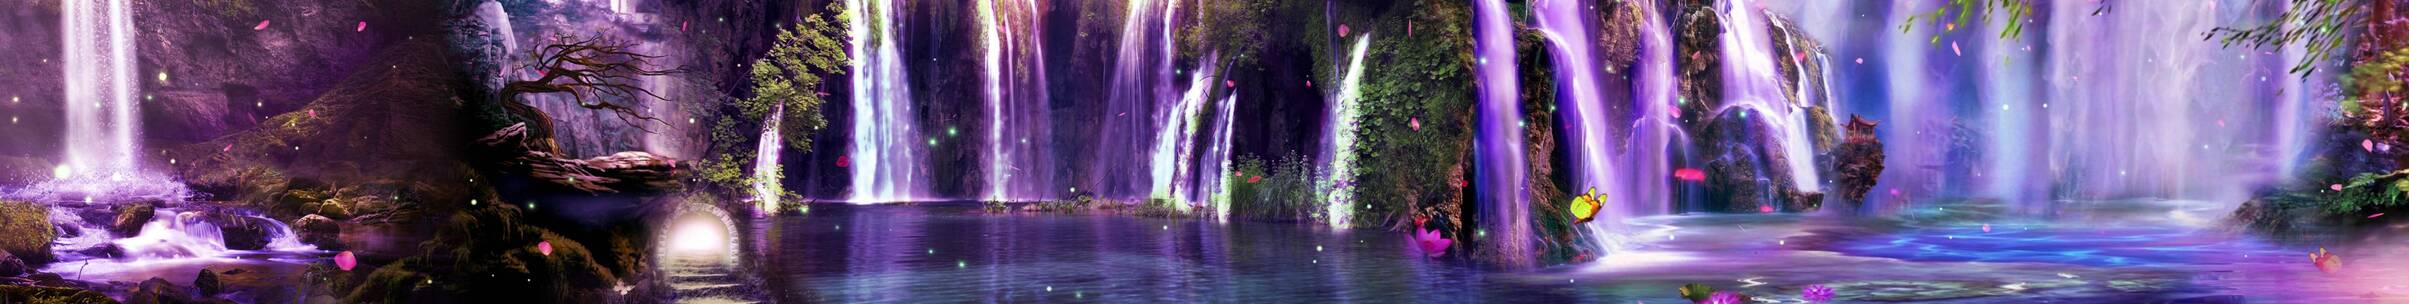 紫色唯美瀑布